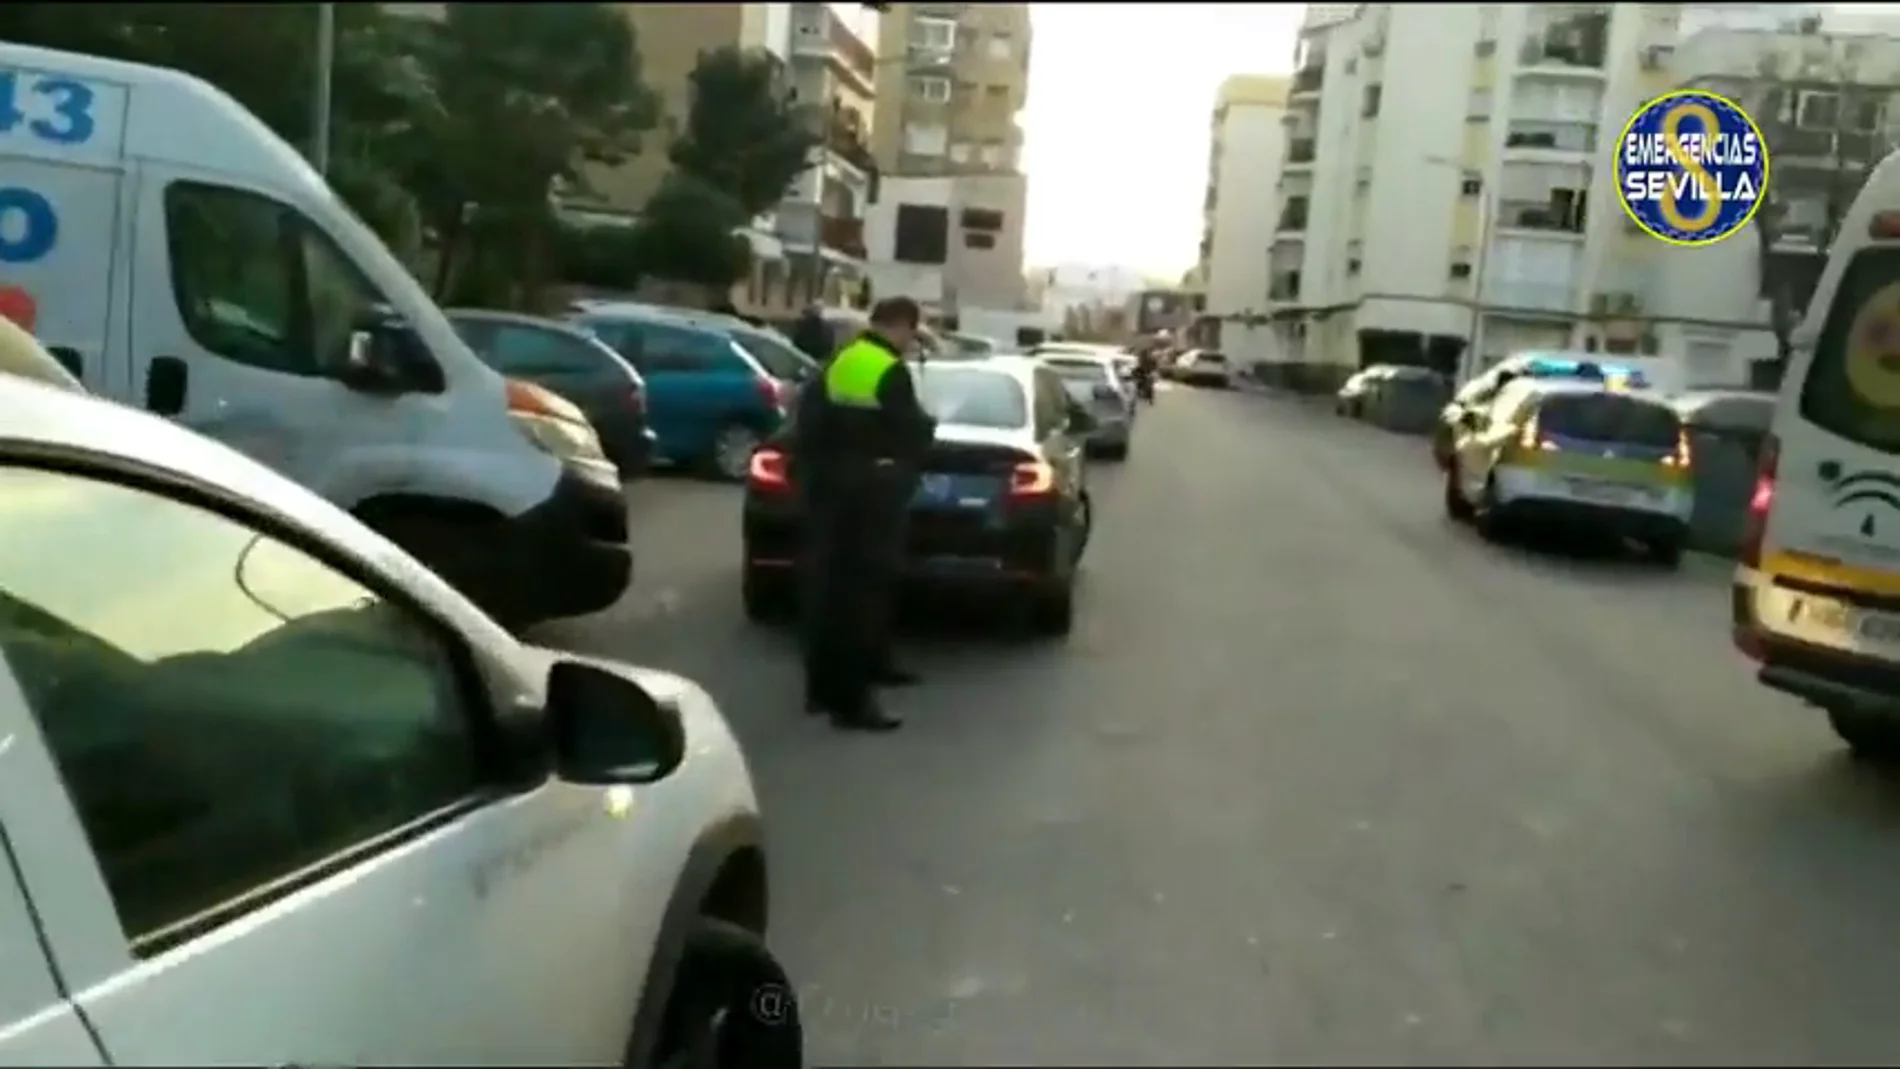 Un conductor de VTC atropella a dos personas en Sevilla tras quedare dormido